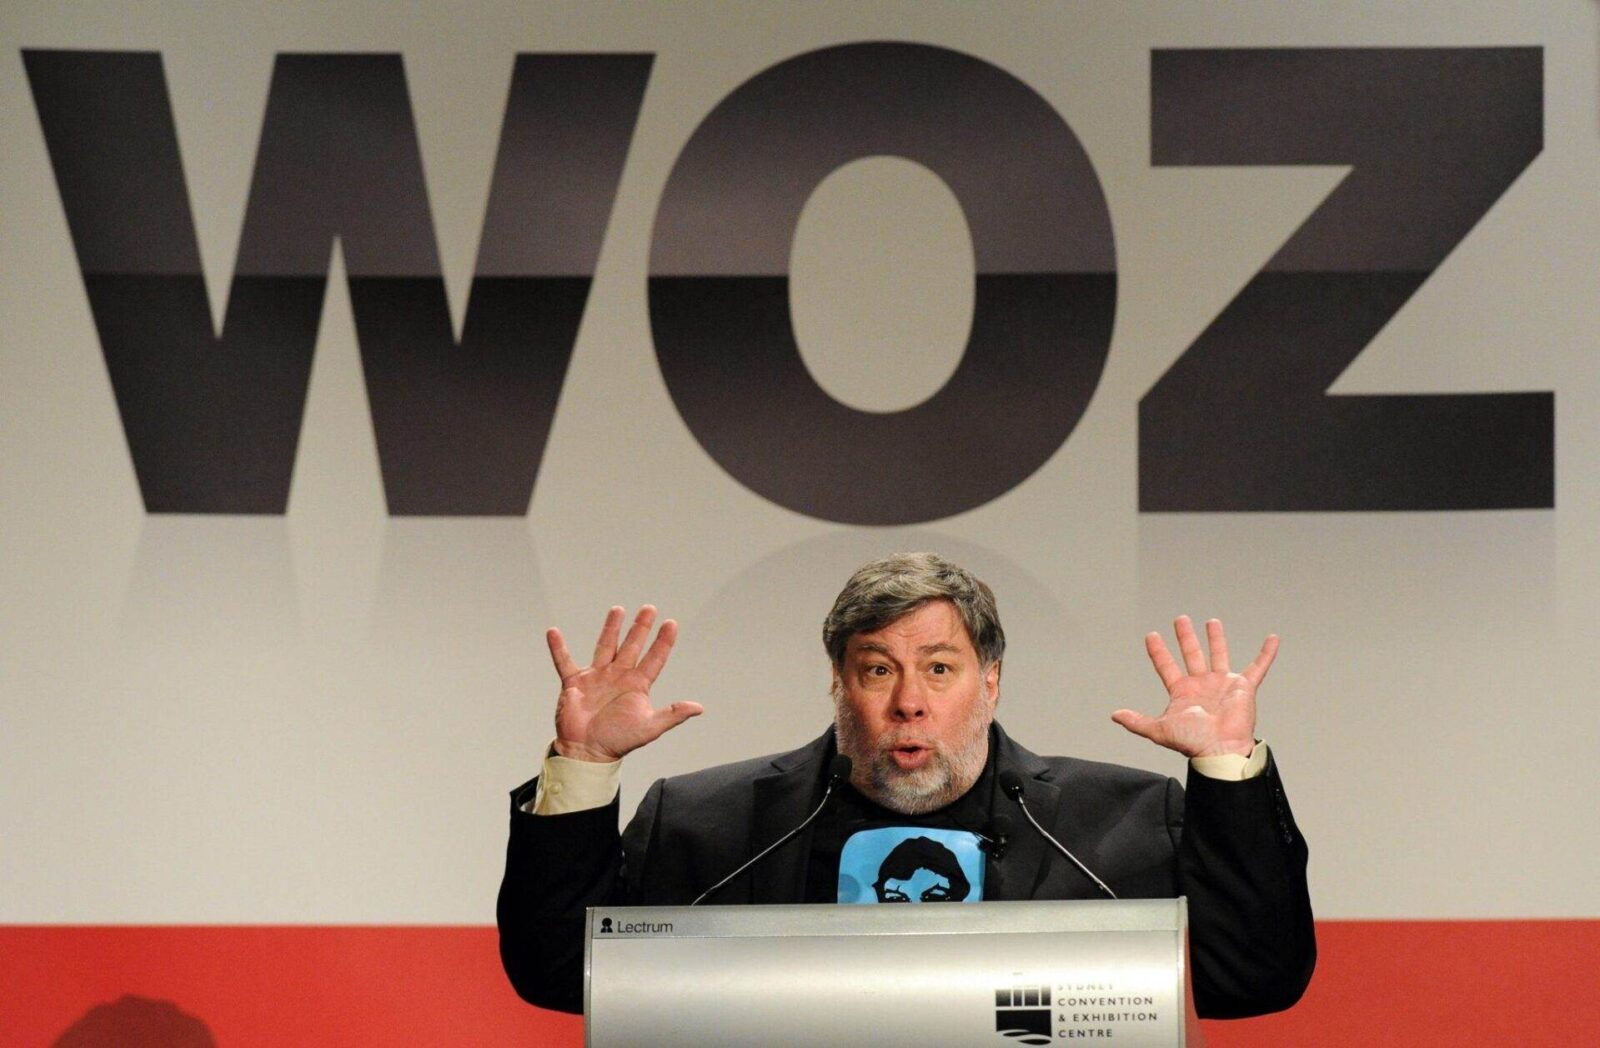 Steve Wozniak iPhonelar cok yuksek fiyatlandiriliyor cunku buna degecekler.